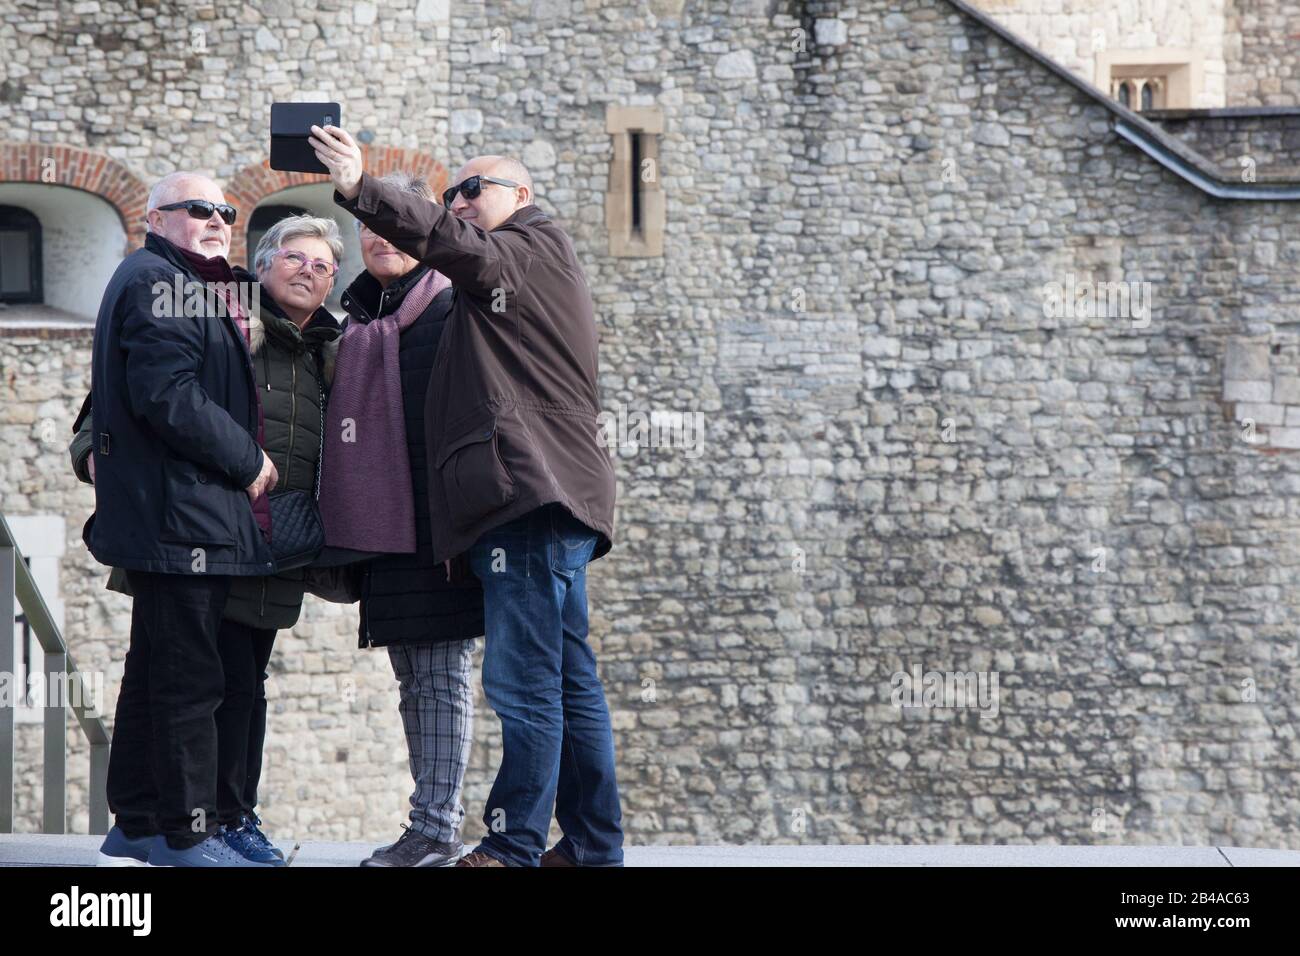 London, Großbritannien. März 2020. Touristen nutzten einen sonnigen Tag, um den Tower of London ohne Facemasken zu besuchen und zeigten eine "Business as usual"-Haltung gegenüber dem Corvid-19-Coronavirus. Anna Watson/Alamy Live News Stockfoto